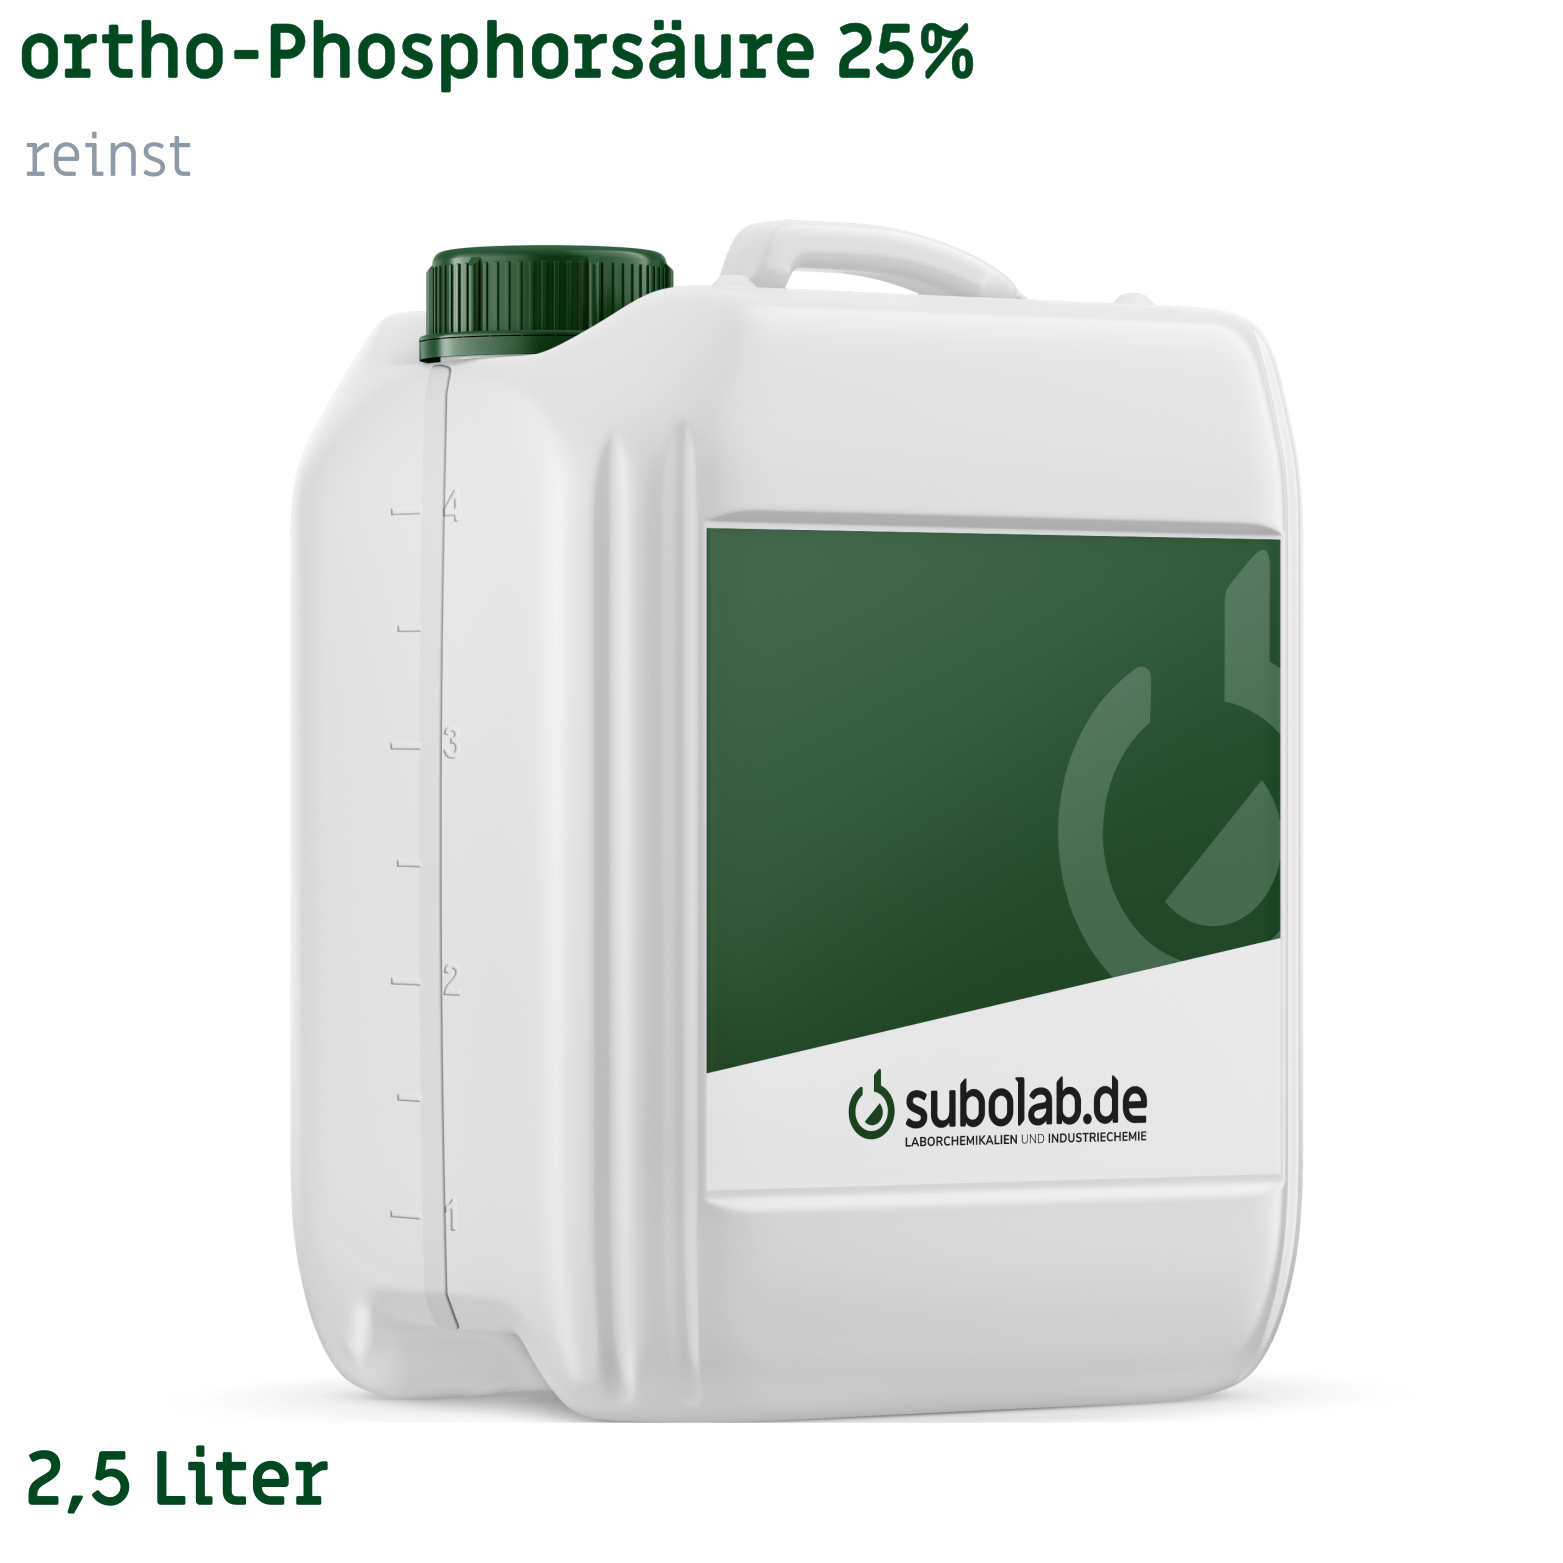 Bild von ortho-Phosphorsäure 25% reinst (2,5 Liter)